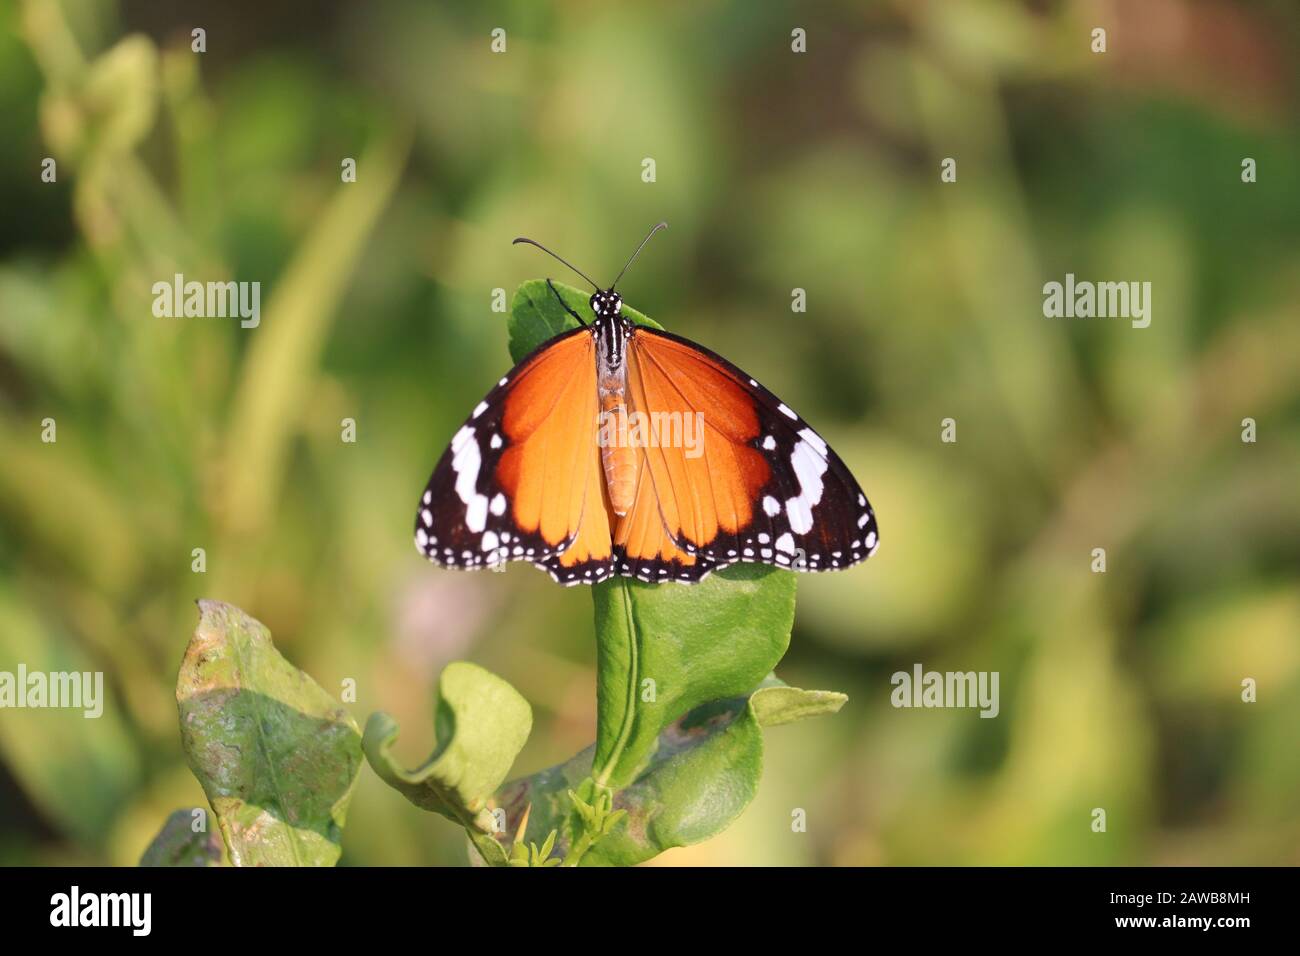 ritratto di una farfalla arancione su foglia verde di limone nella natura , ali di farfalla, insetto farfalla all'aperto Foto Stock